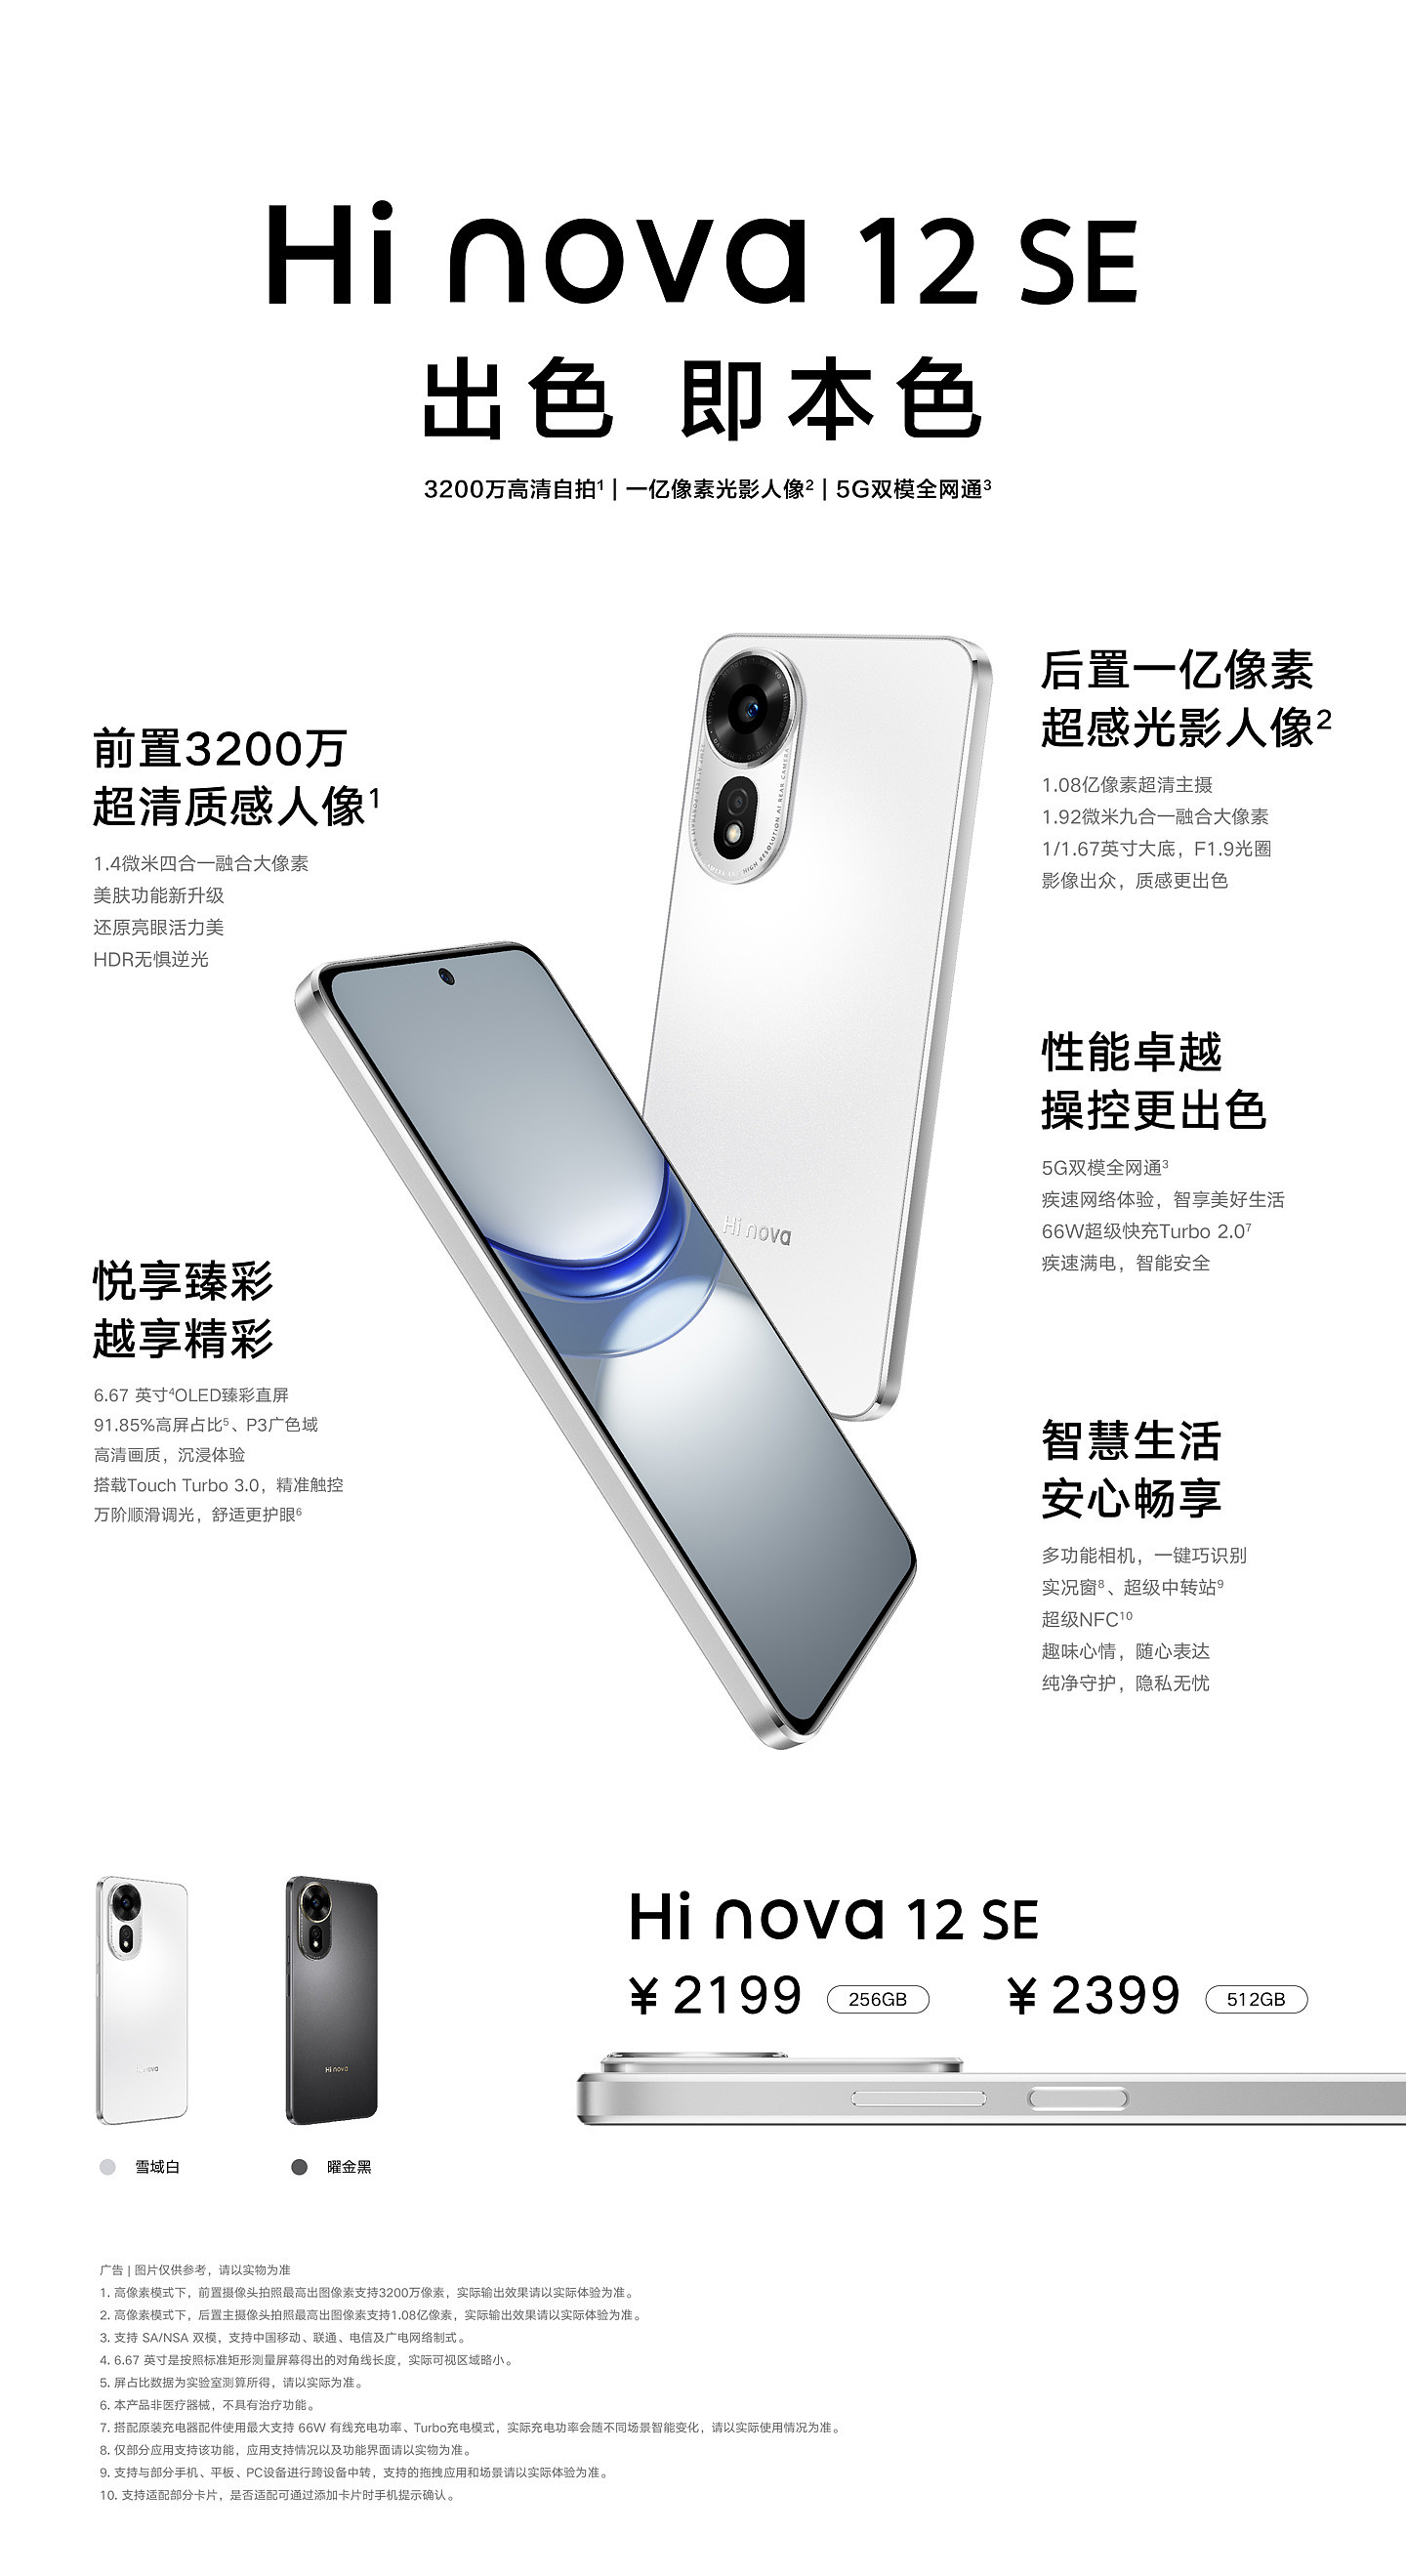 中邮通信 Hi nova 12 SE 手机发布，2199 元起 - 3